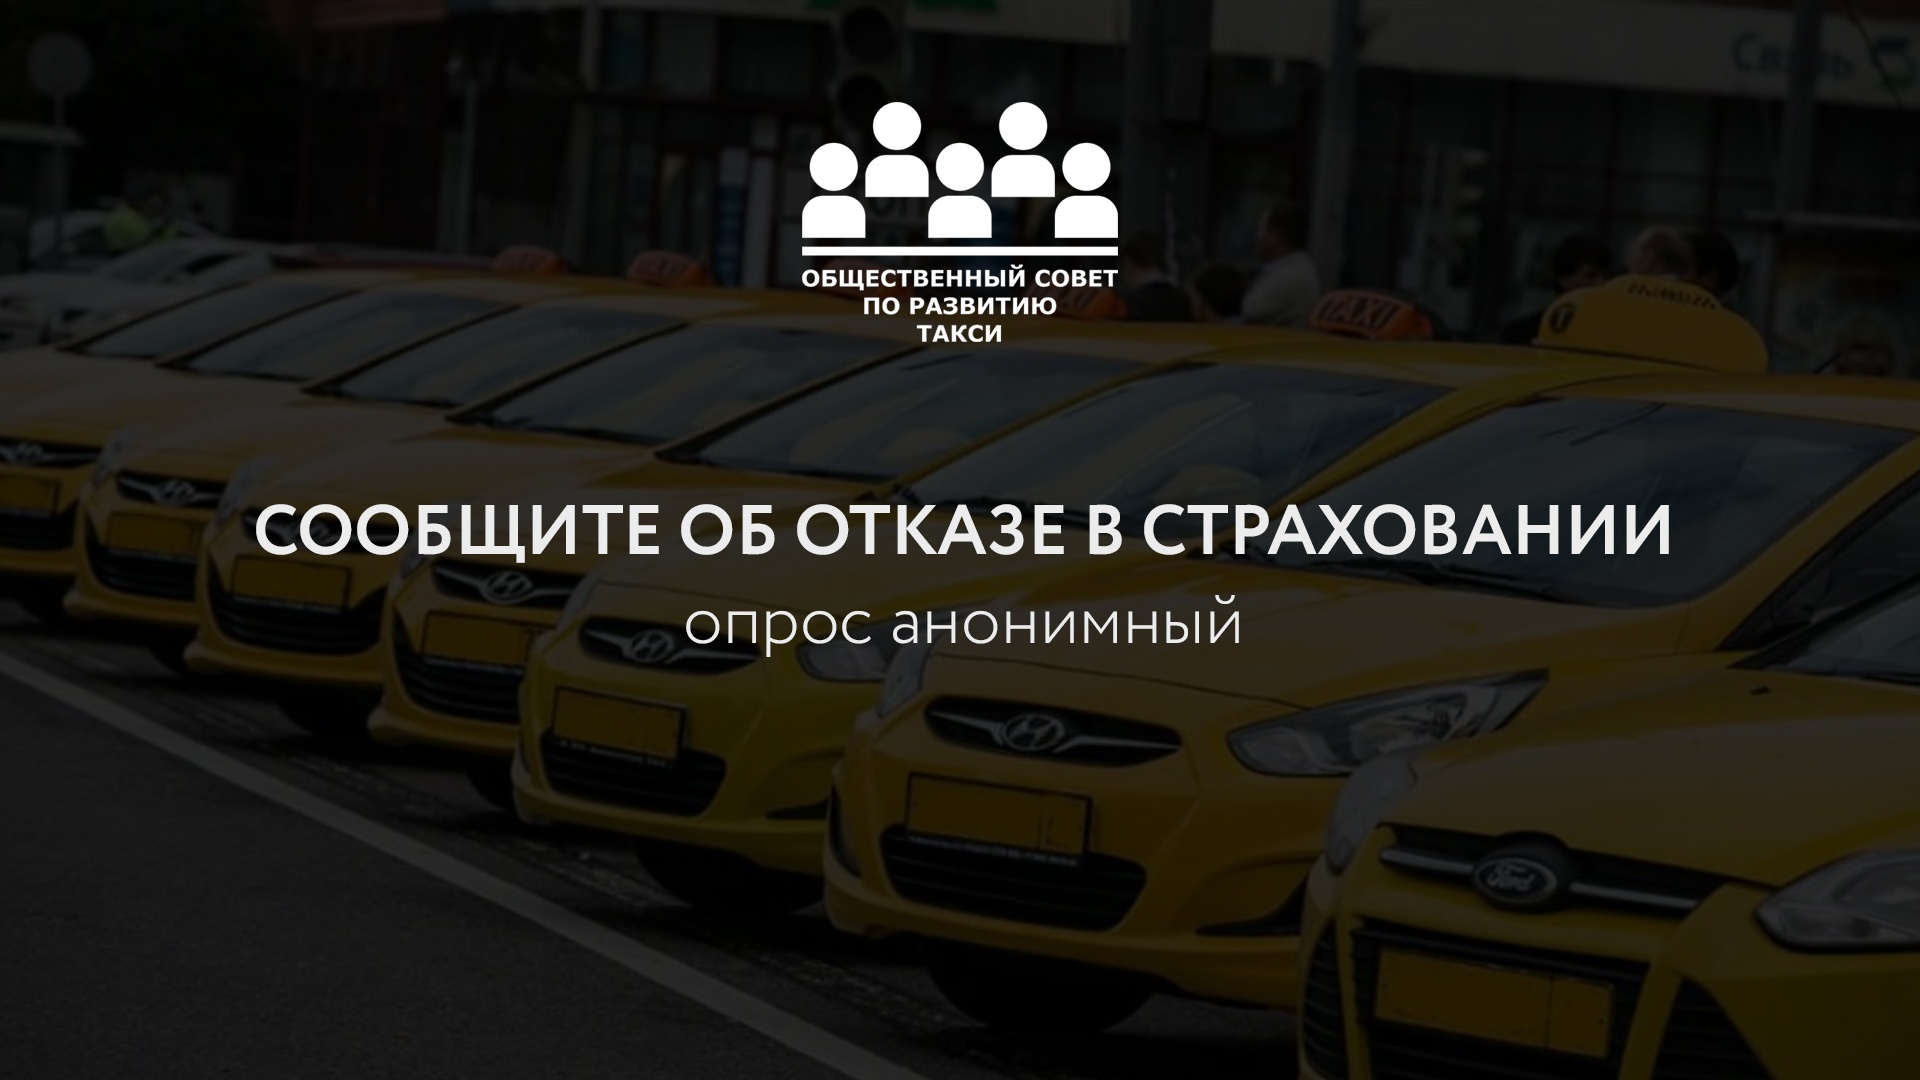 Опрос перевозчиков о проблемах обязательного автострахования машин такси